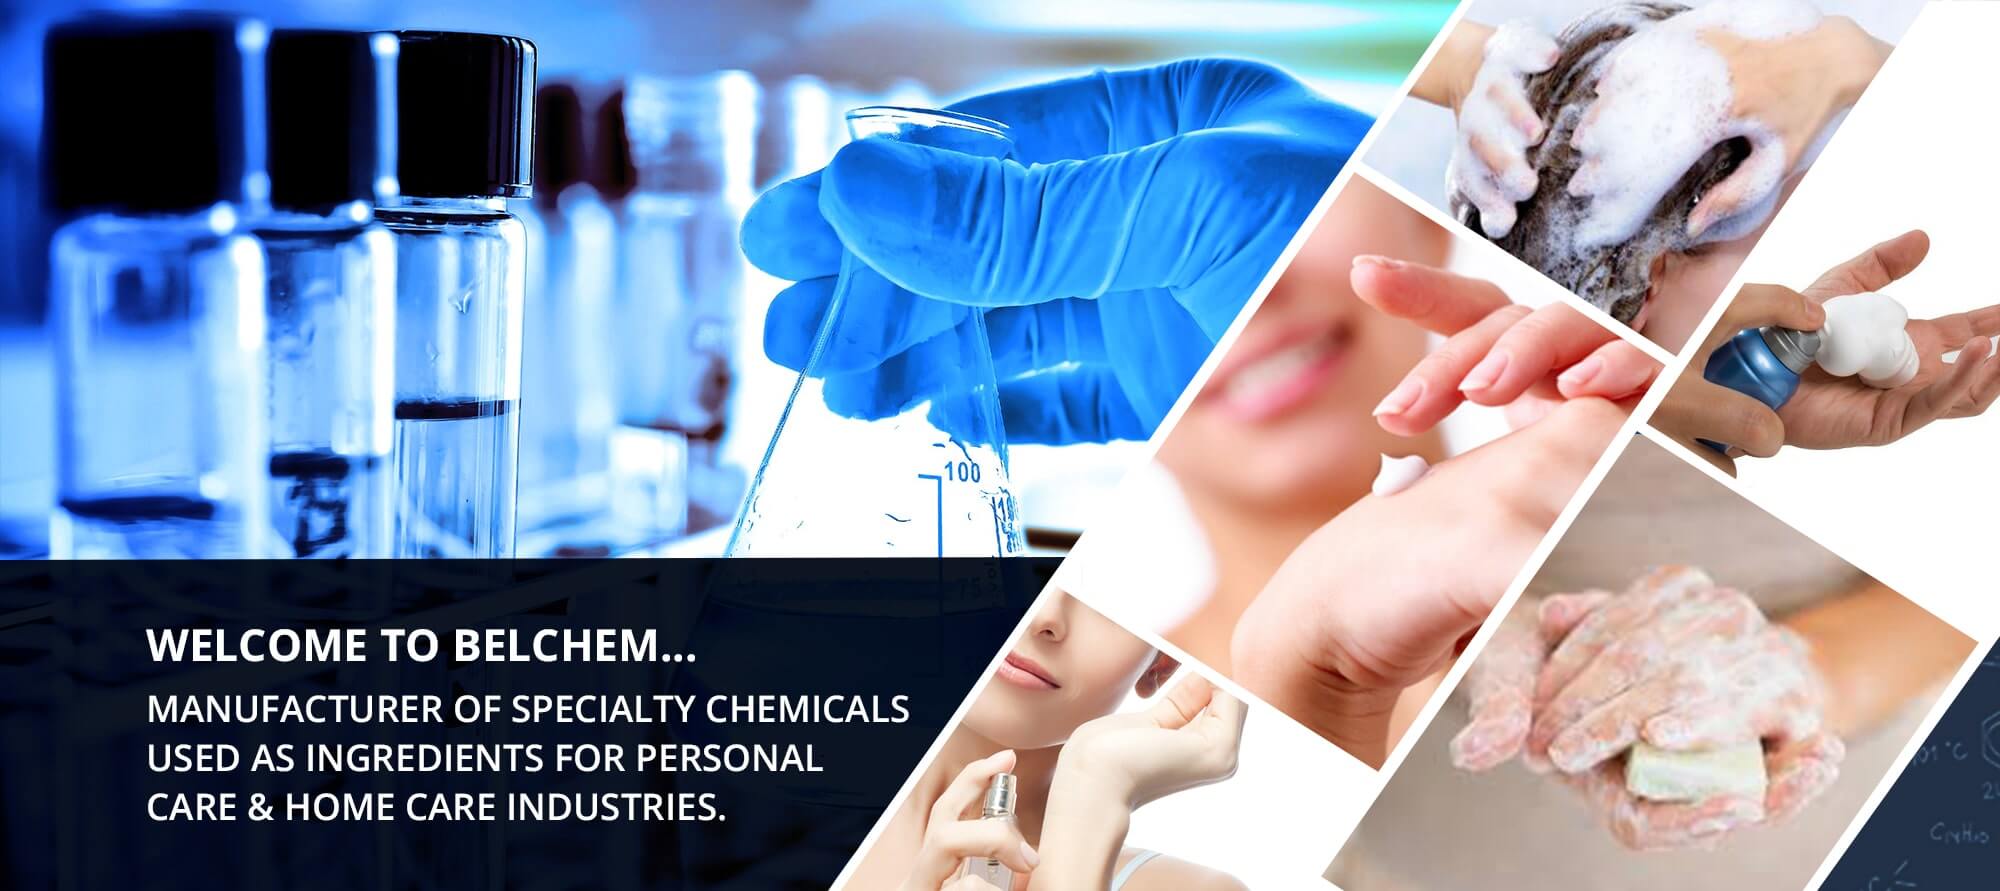 Belchem - Specialty chemical manufacturer